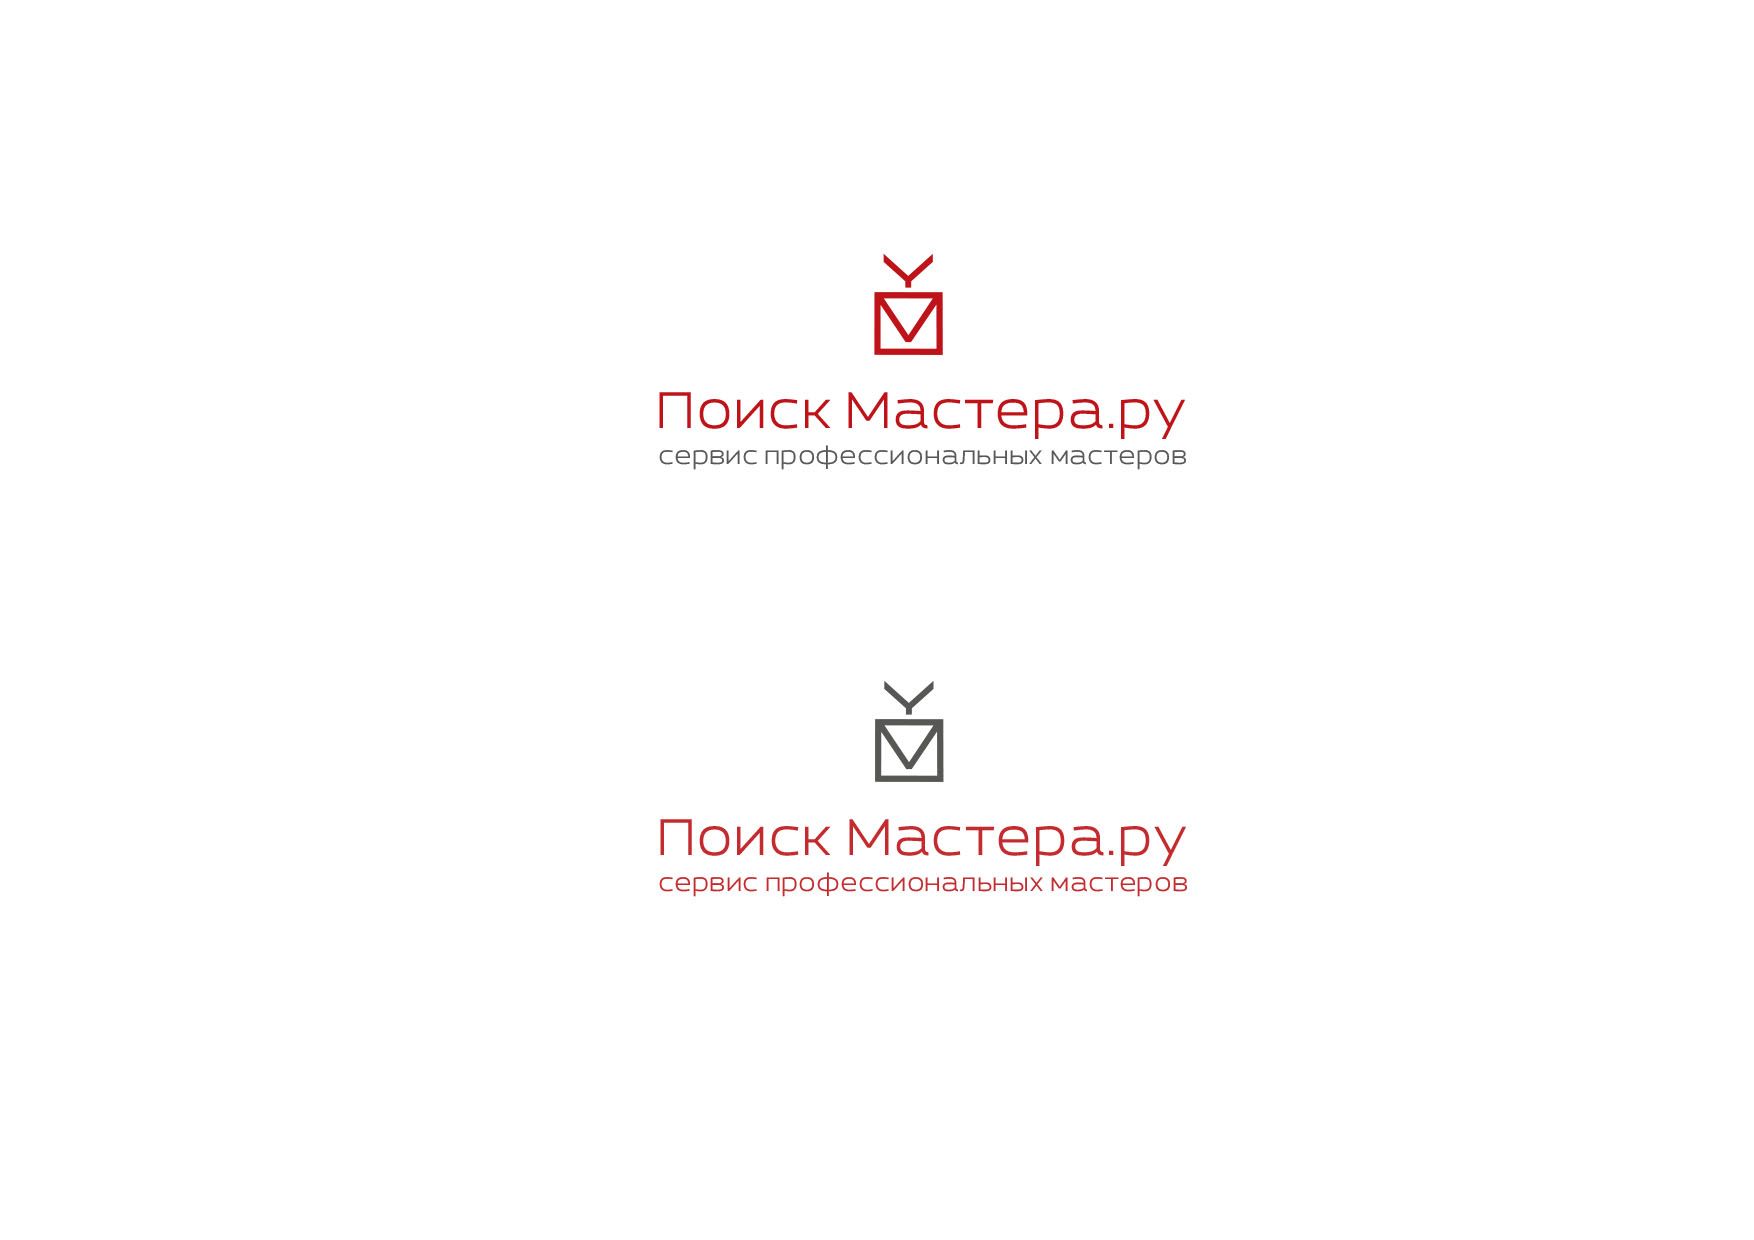 Логотип для сервиса мастеров - дизайнер Capfir